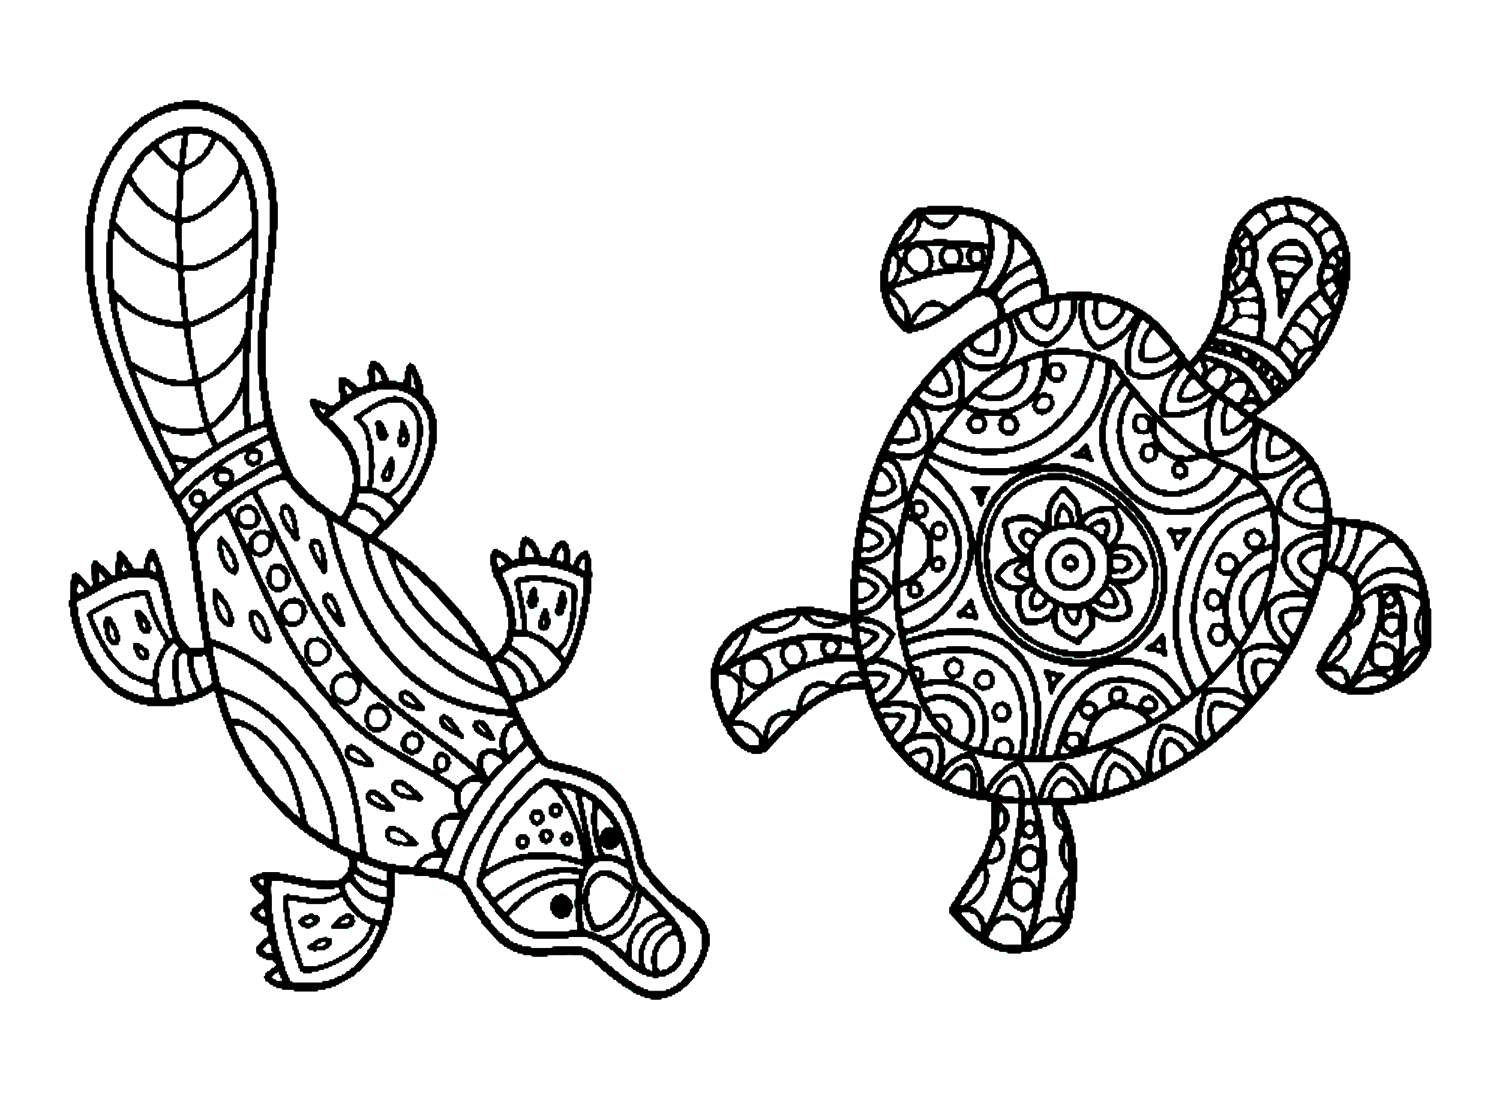 Mandala Vogelbekdier en Schildpad van Vogelbekdier